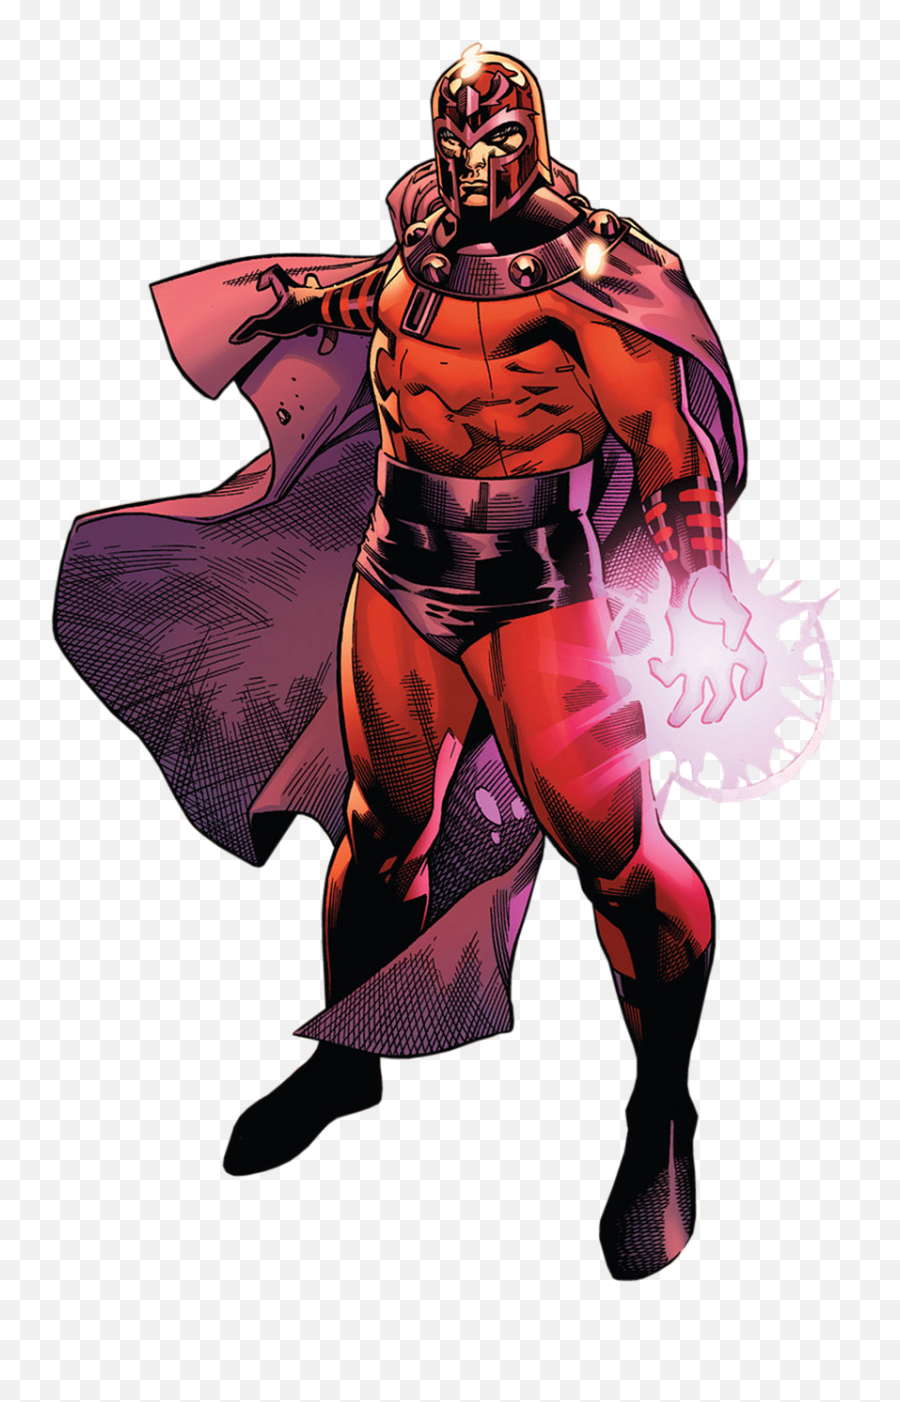 Magneto Transparent - Marvel X Men Magneto Png,Magneto Png